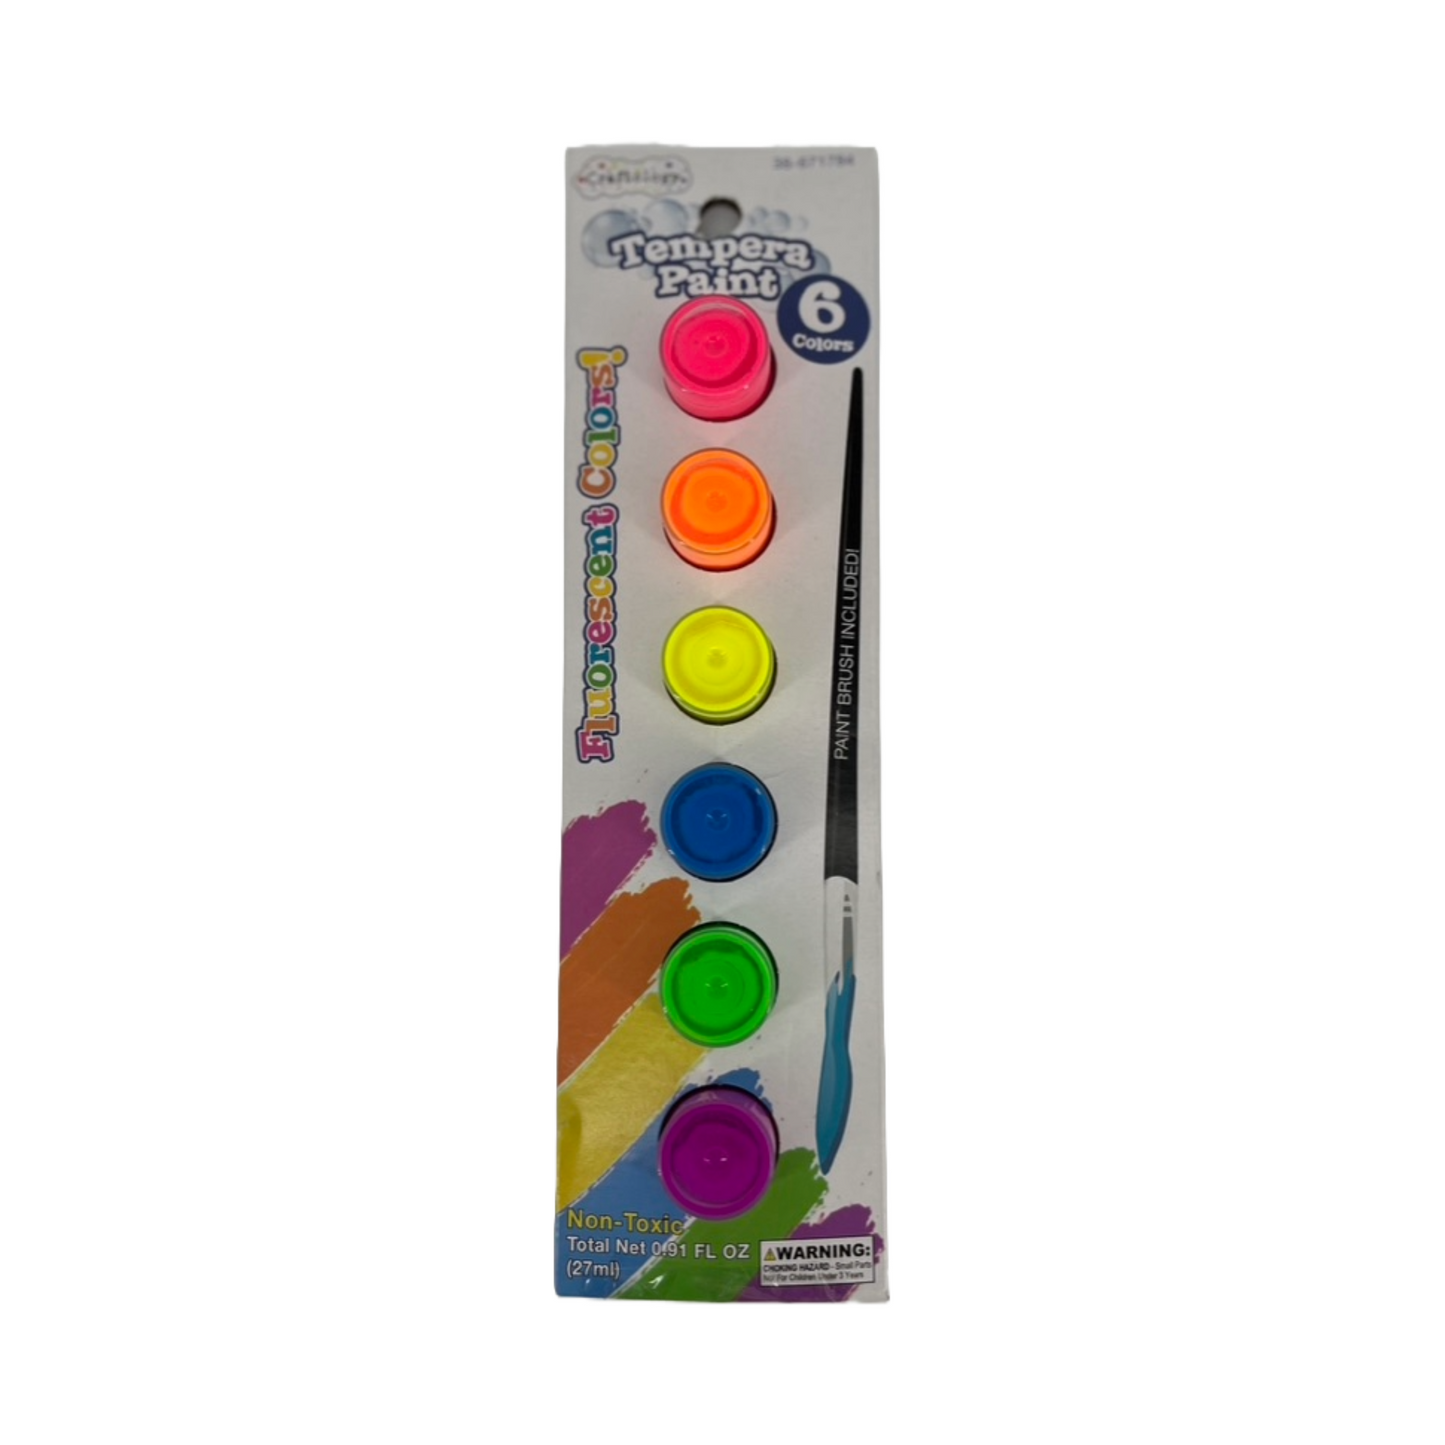 Craftology Paint Tempera con pincel, Lavable, Colores Surtidos, 6 colores artísticos fluorescentes